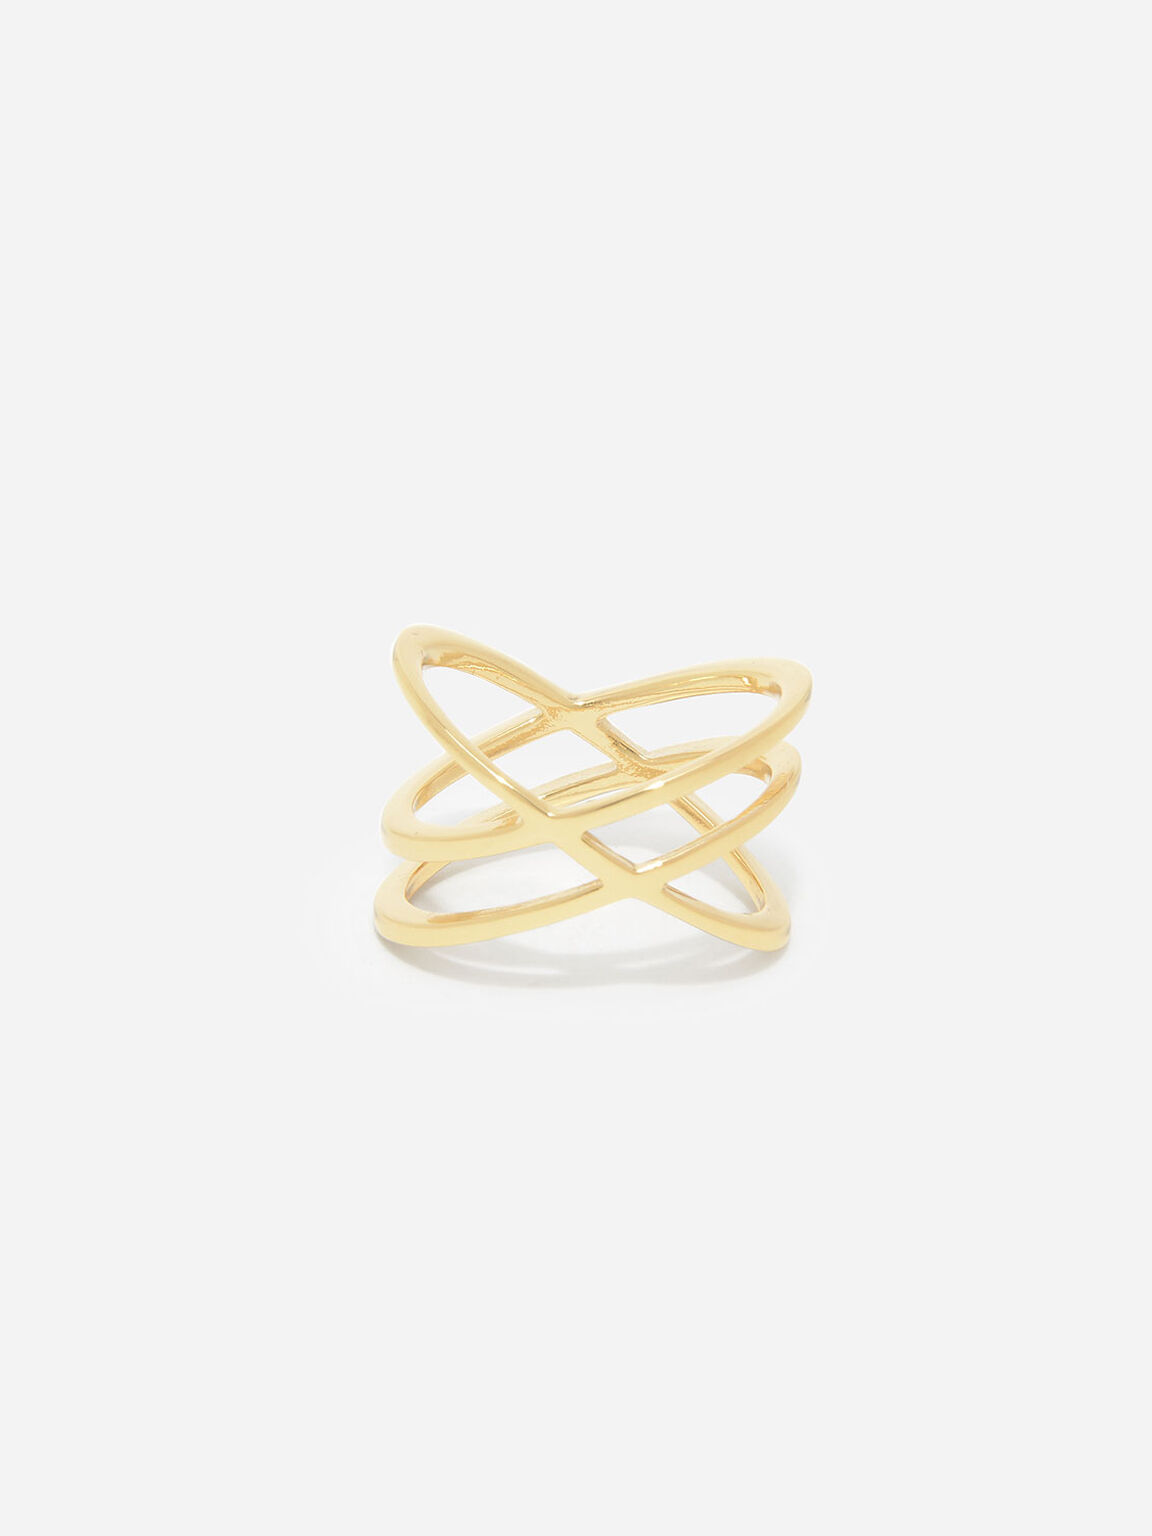 Criss Cross Ring, Gold, hi-res